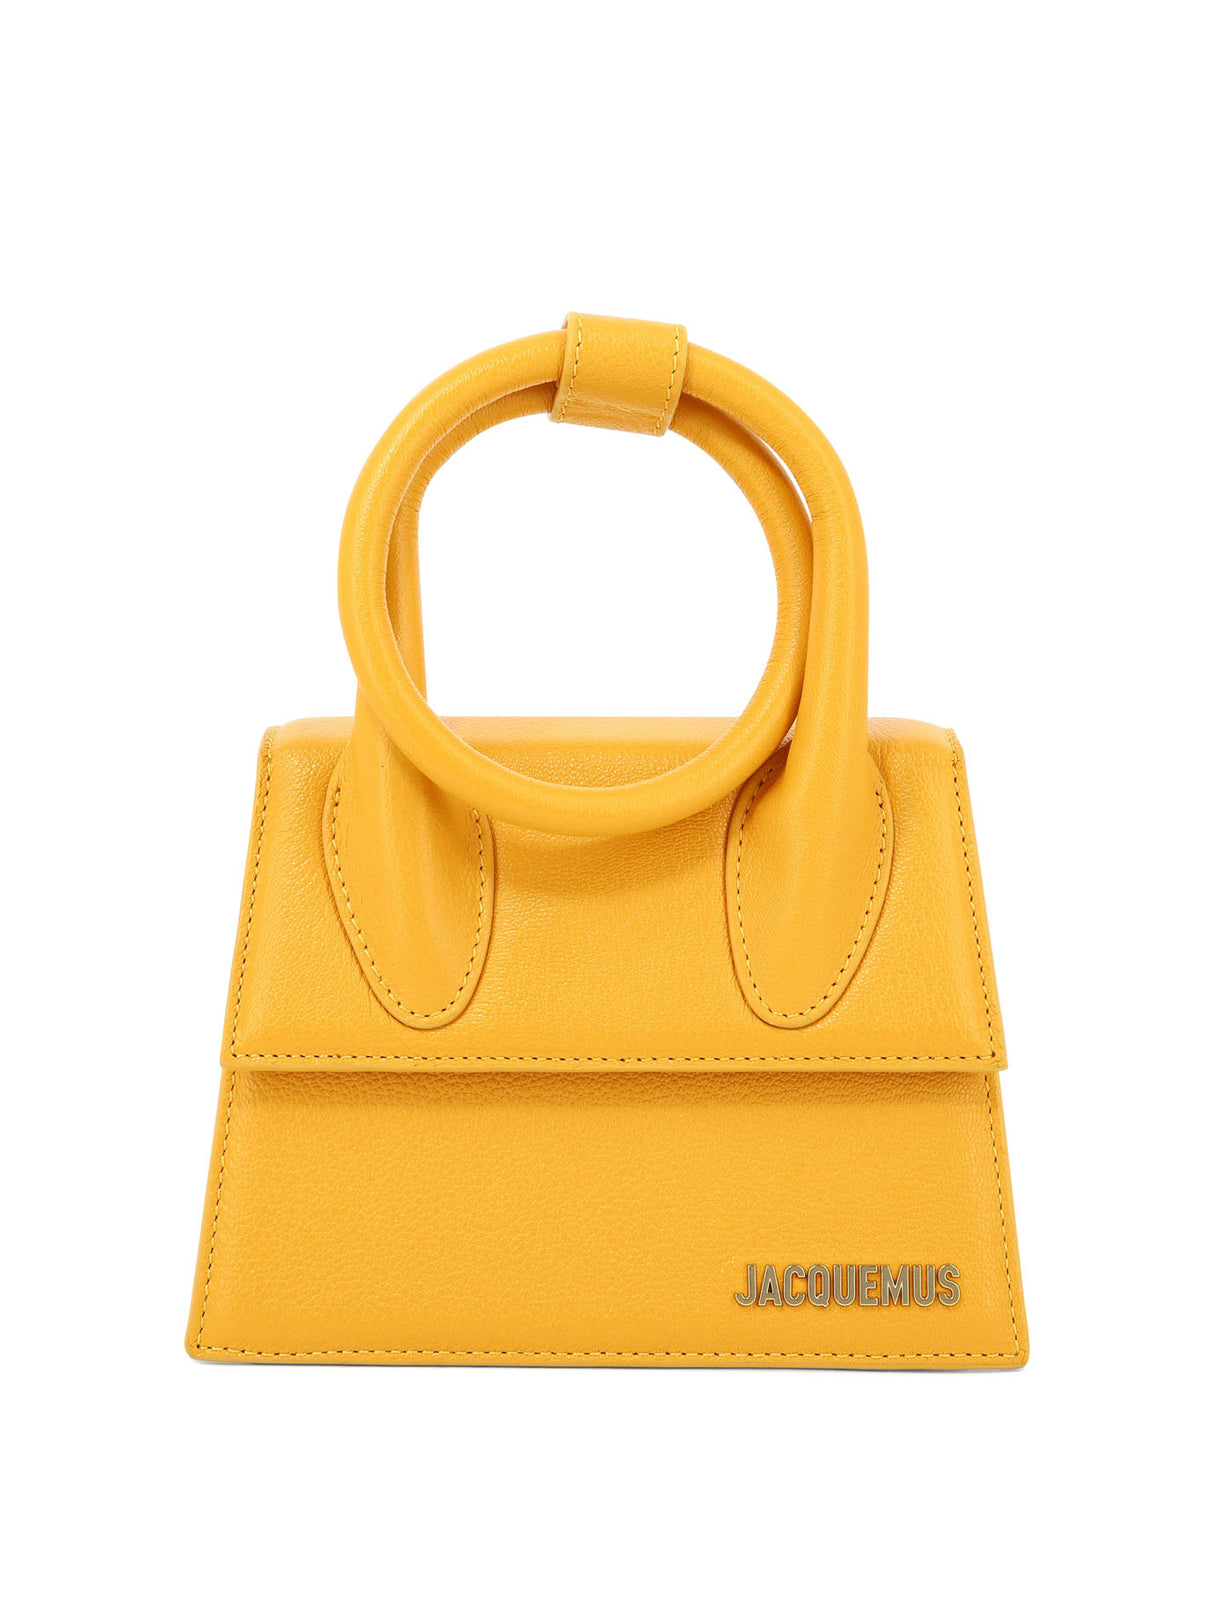 Túi xách dành cho phụ nữ màu da cam với quai đeo top-handle